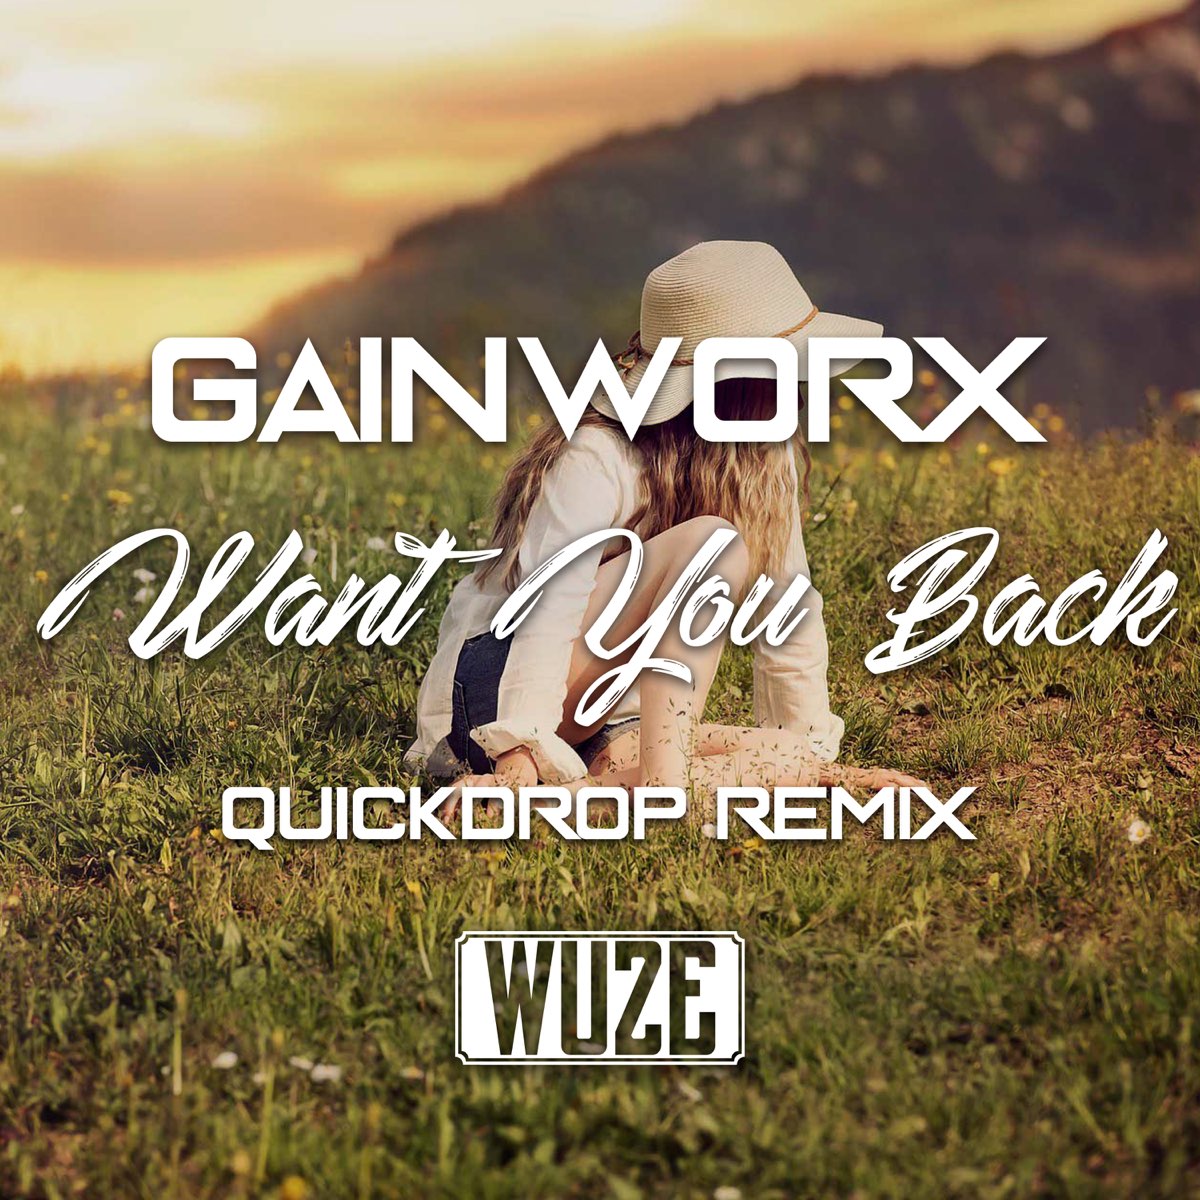 Песня want me back. Want you back (Quickdrop RMX) Gainworx. Want to me RMX. Песня all i want is you ремикс. You want see me Cry Remix девушка на обложке.